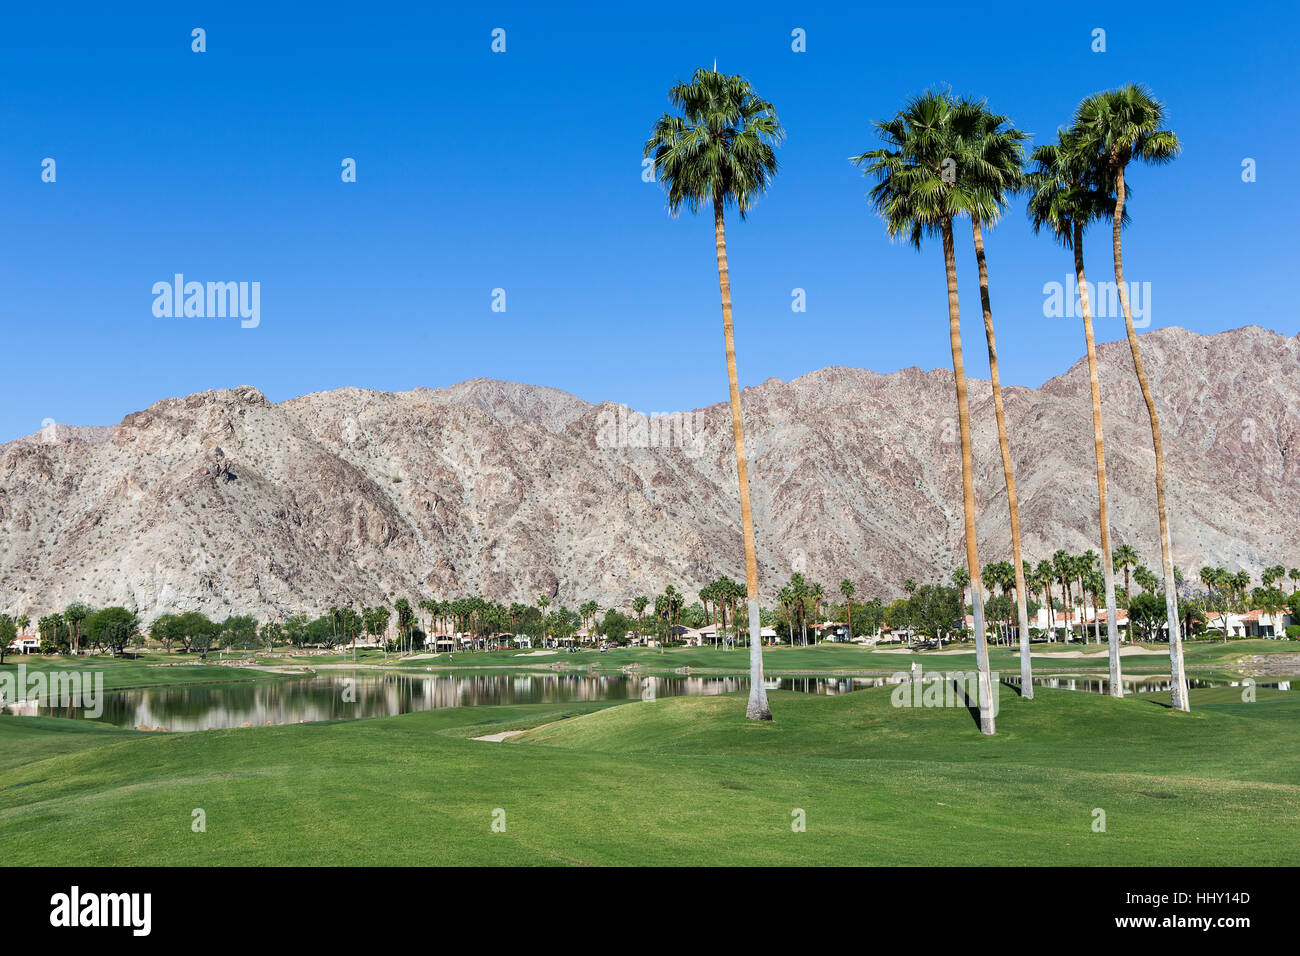 Campo de golf PGA West en la quinta, Palm Springs, California, EE.UU. Foto de stock